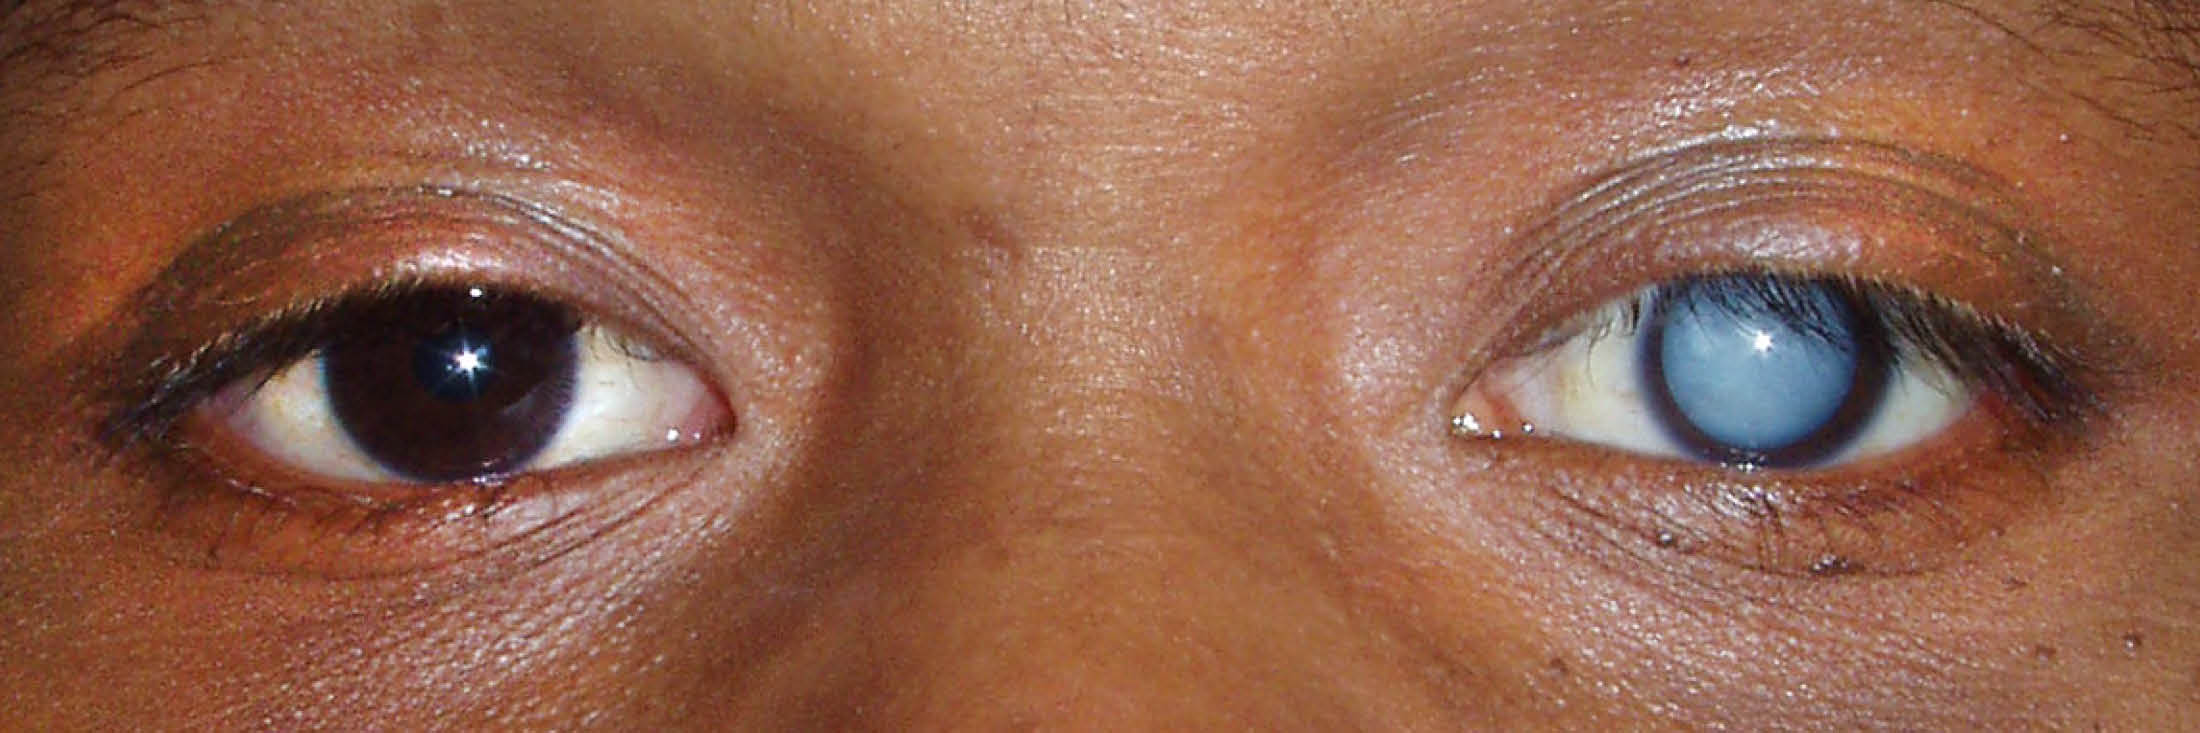 Один глаз открыт другой закрыт. Тетаническая катаракта. Старческая(сенильная)катаракта. Дерматогенная катаракта.